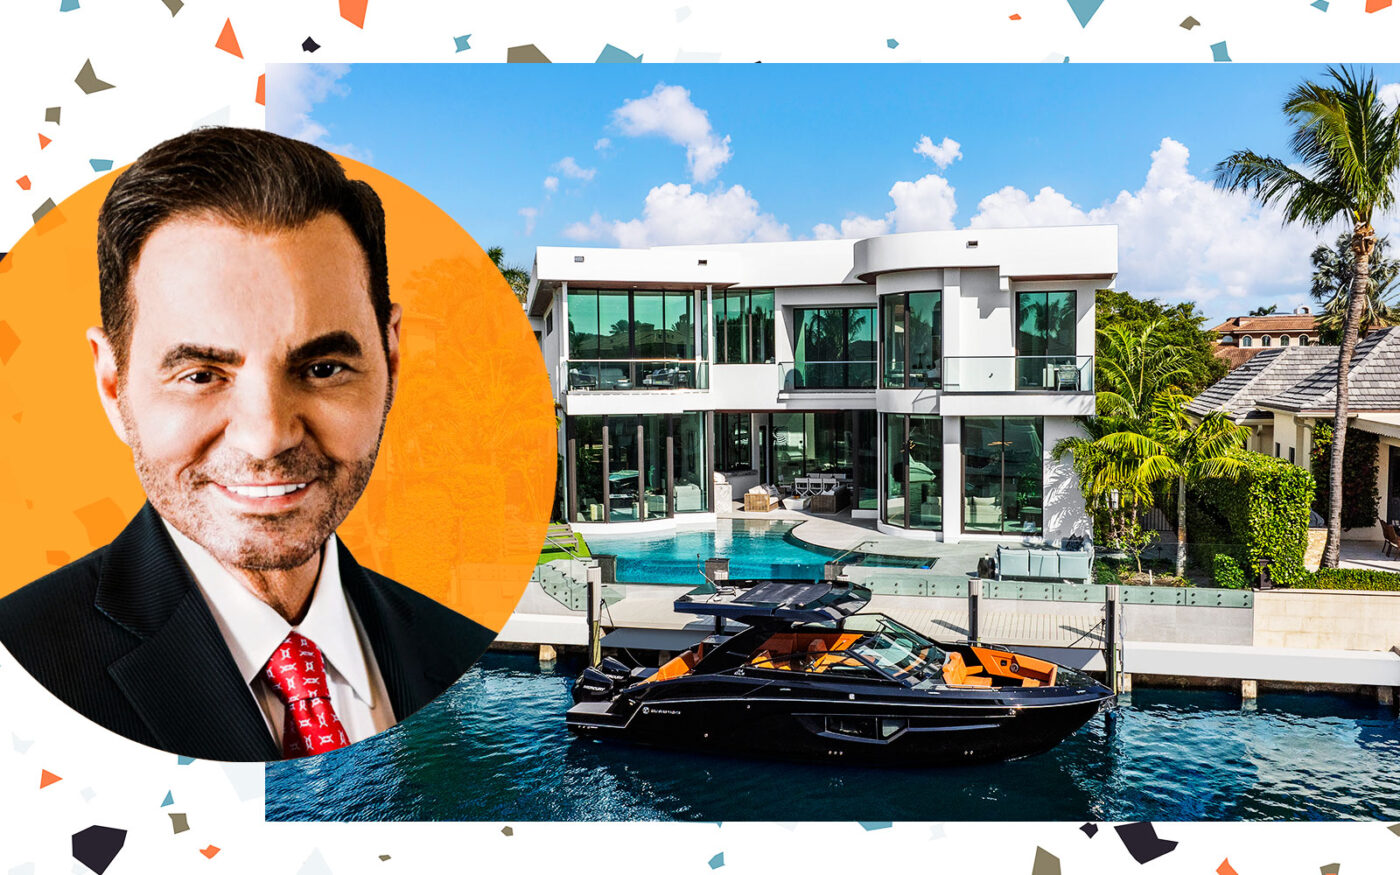 Luxury Boom: AbbVie’s Richard Gonzalez Latest to Buy in Boca